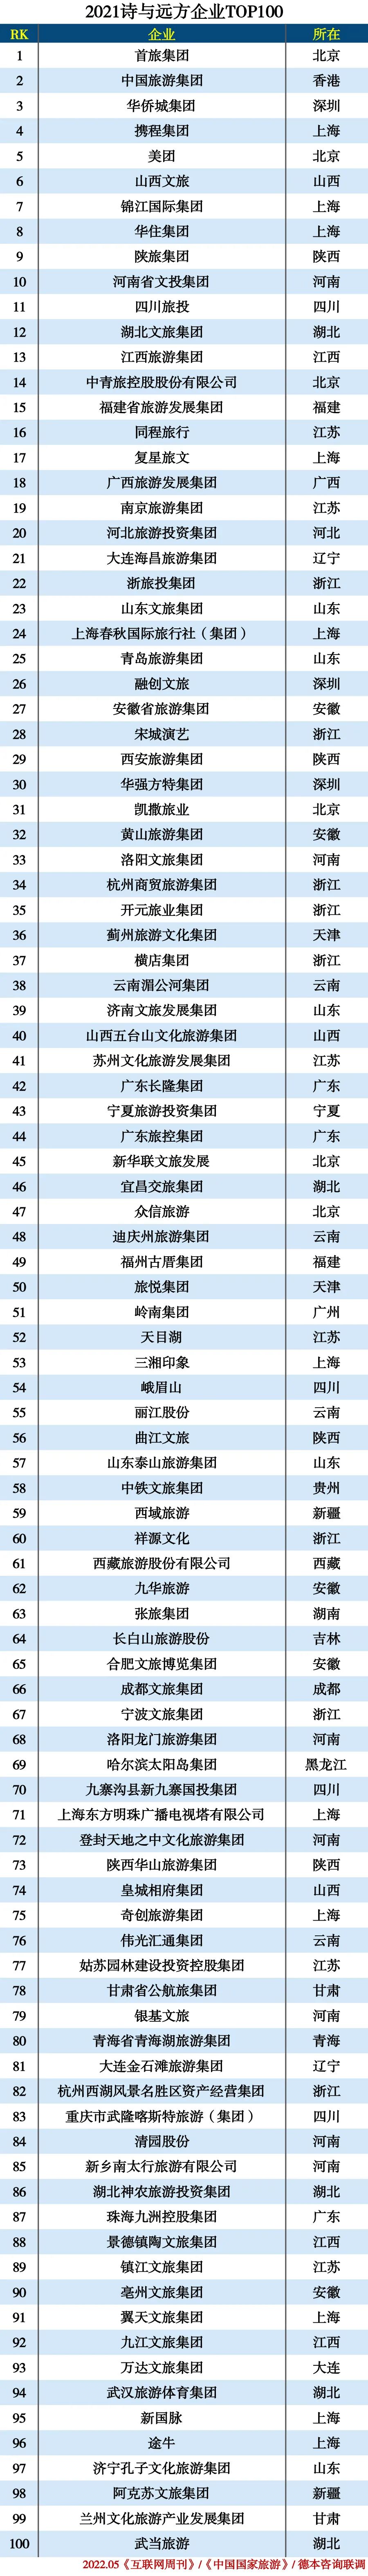 2021诗与远方企业TOP100排行榜.jpg